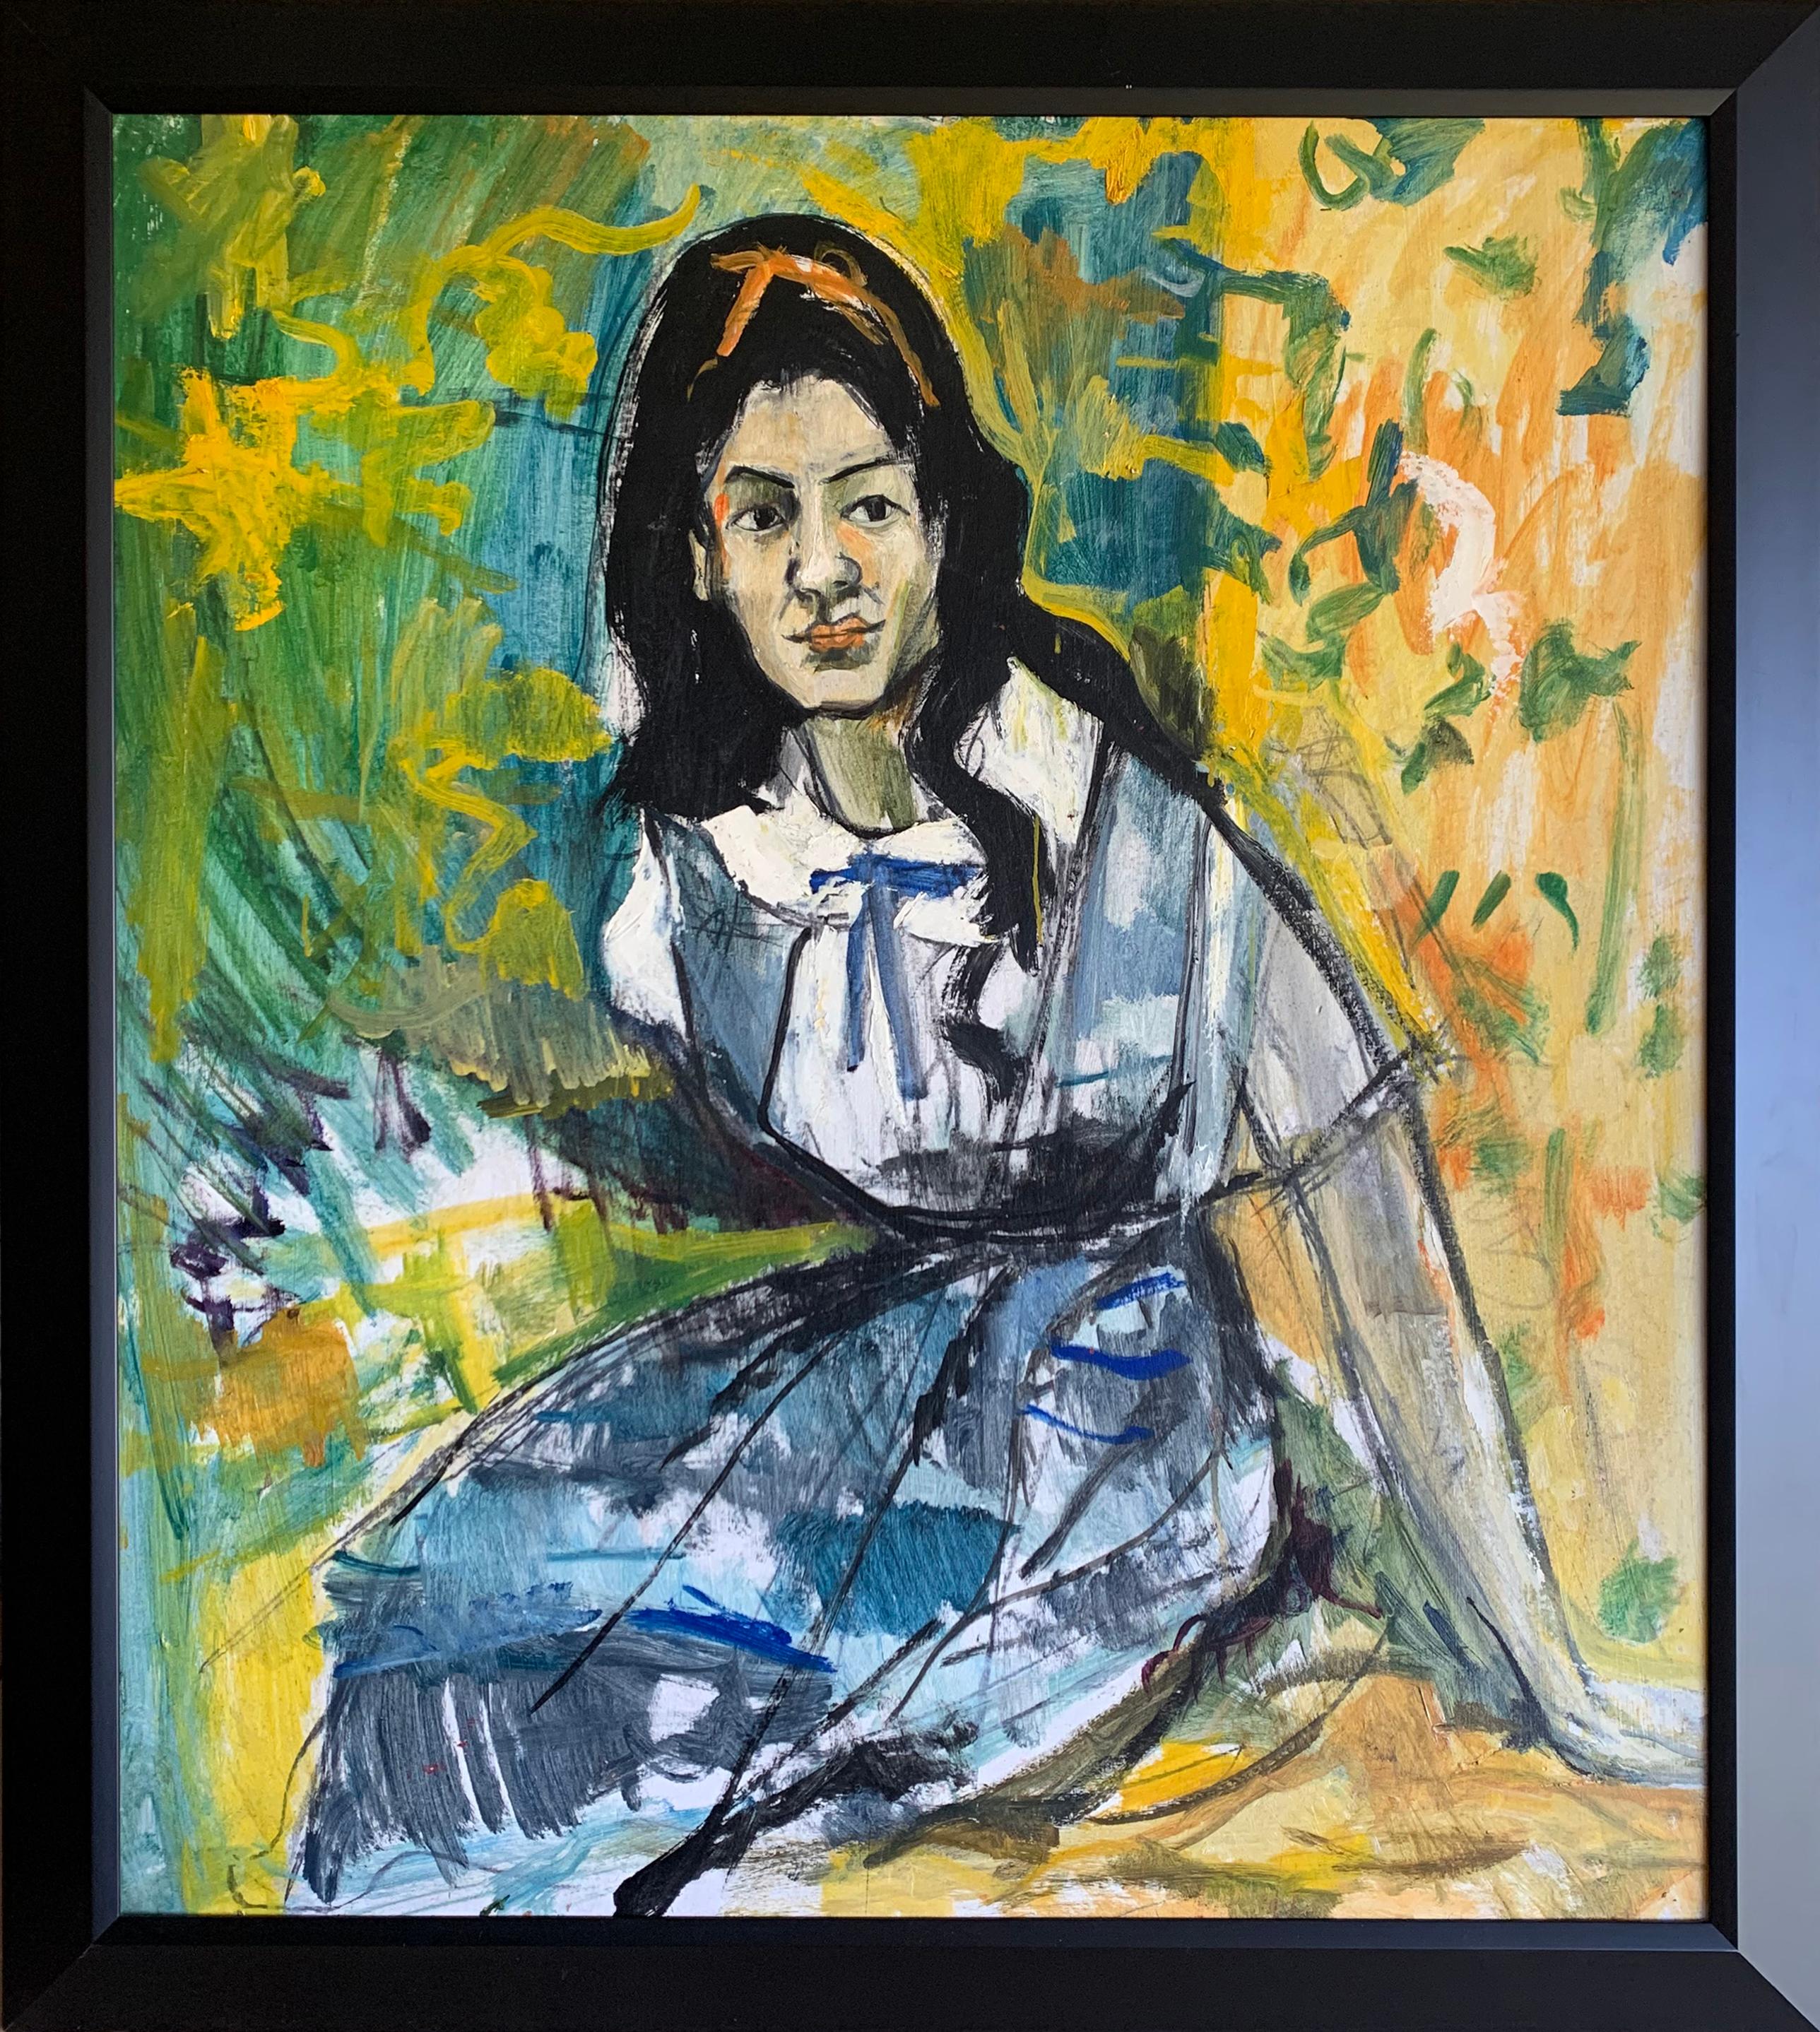 Mädchen mit Schleife im Haar, expressionistisches Porträt des Künstlers aus Philadelphia (Expressionismus), Painting, von Bernard Harmon